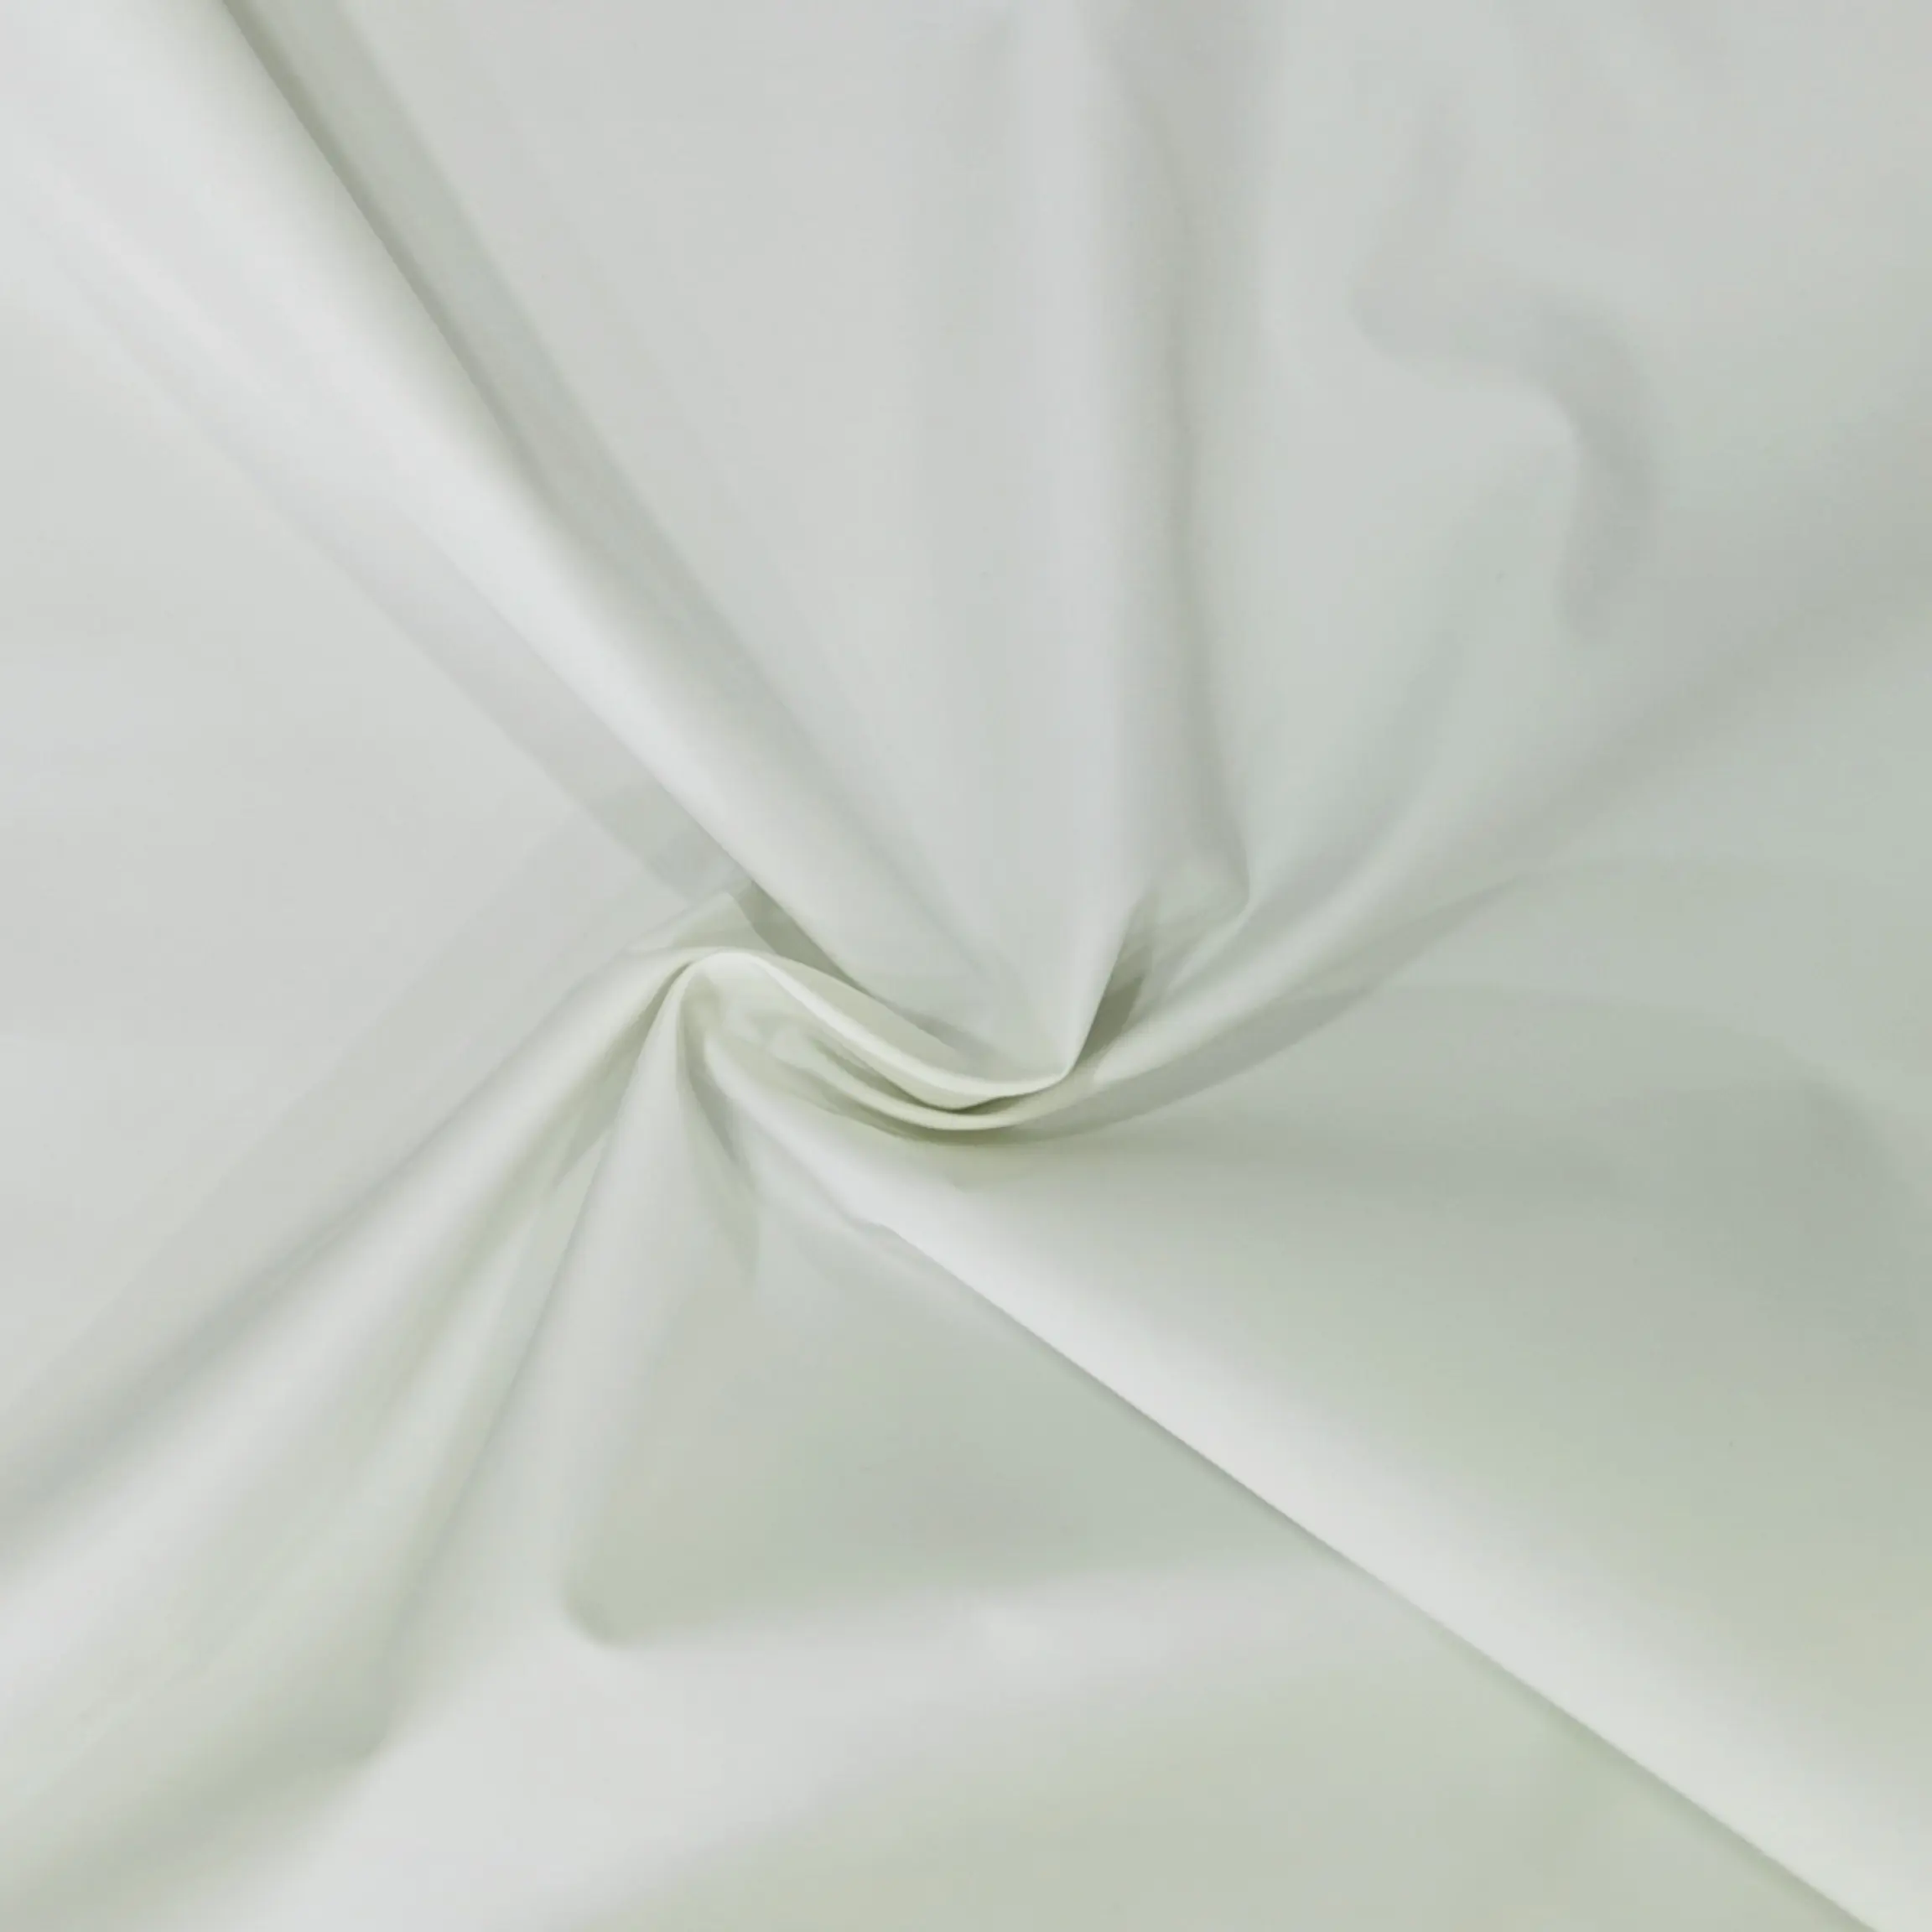 Ucuz fiyat 30D rüzgar geçirmez su geçirmez 100% Polyester ipek kumaş için erkek mayoları